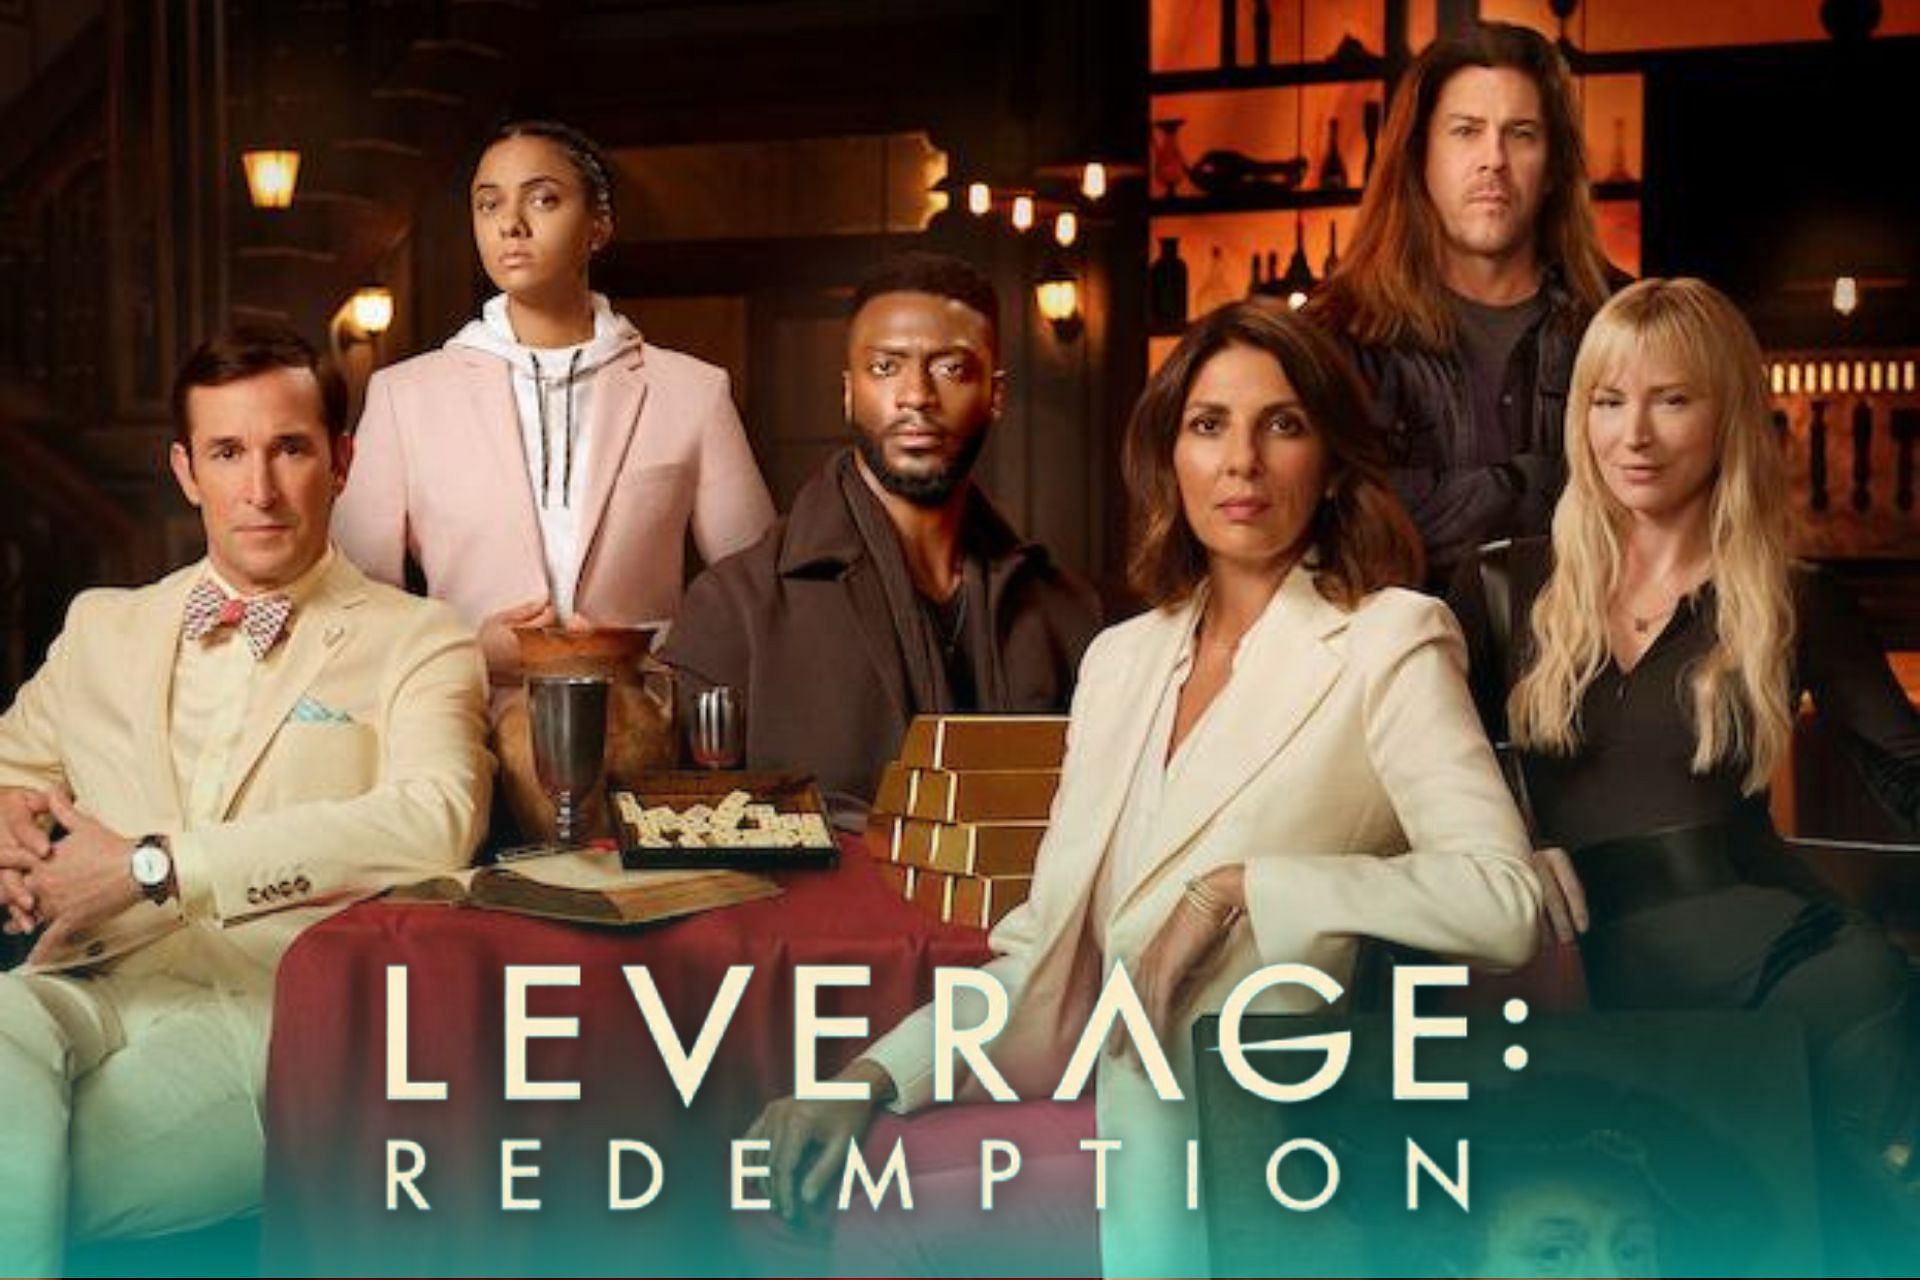 Leverage Redemption Season 2